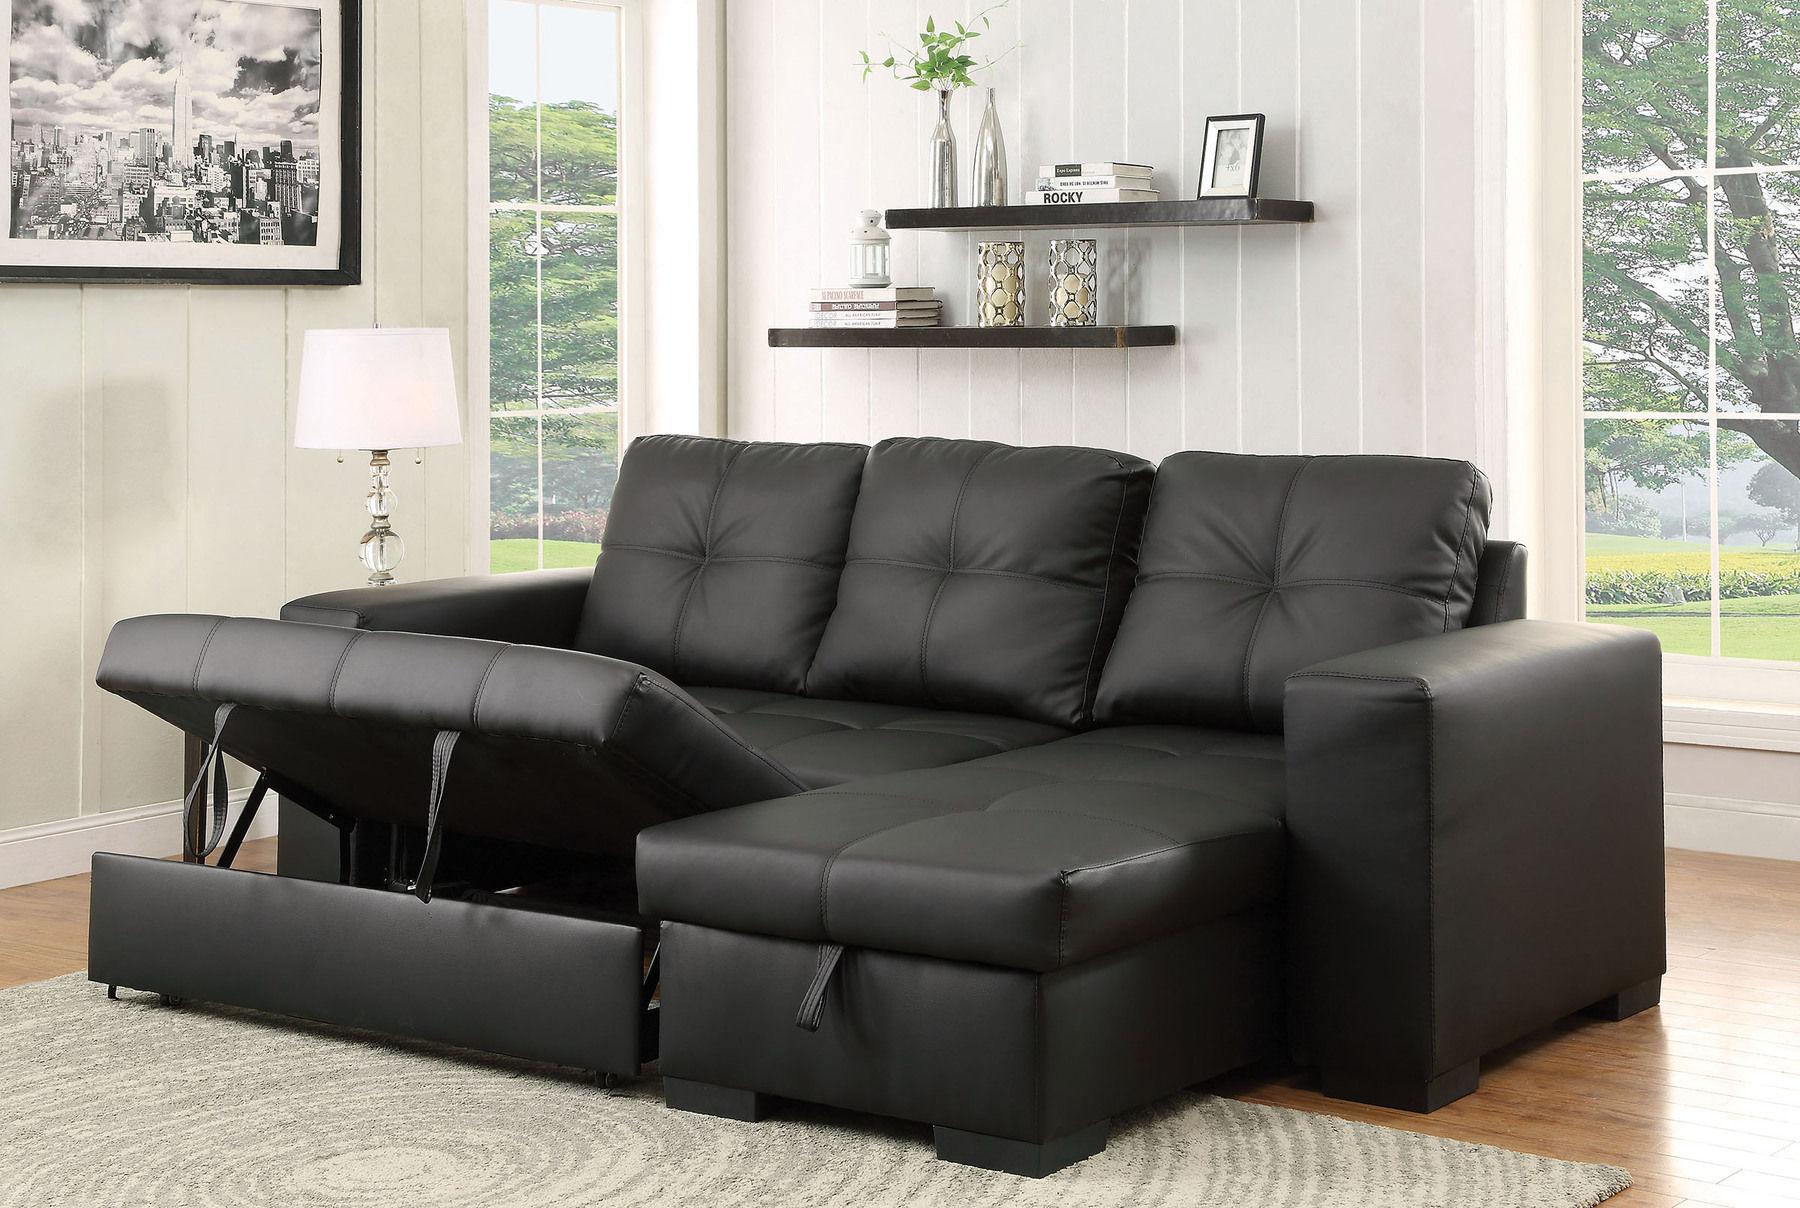 

    
Furniture of America DENTON CM6149BK-LTR Sectional Sofa Black CM6149BK-LTR
